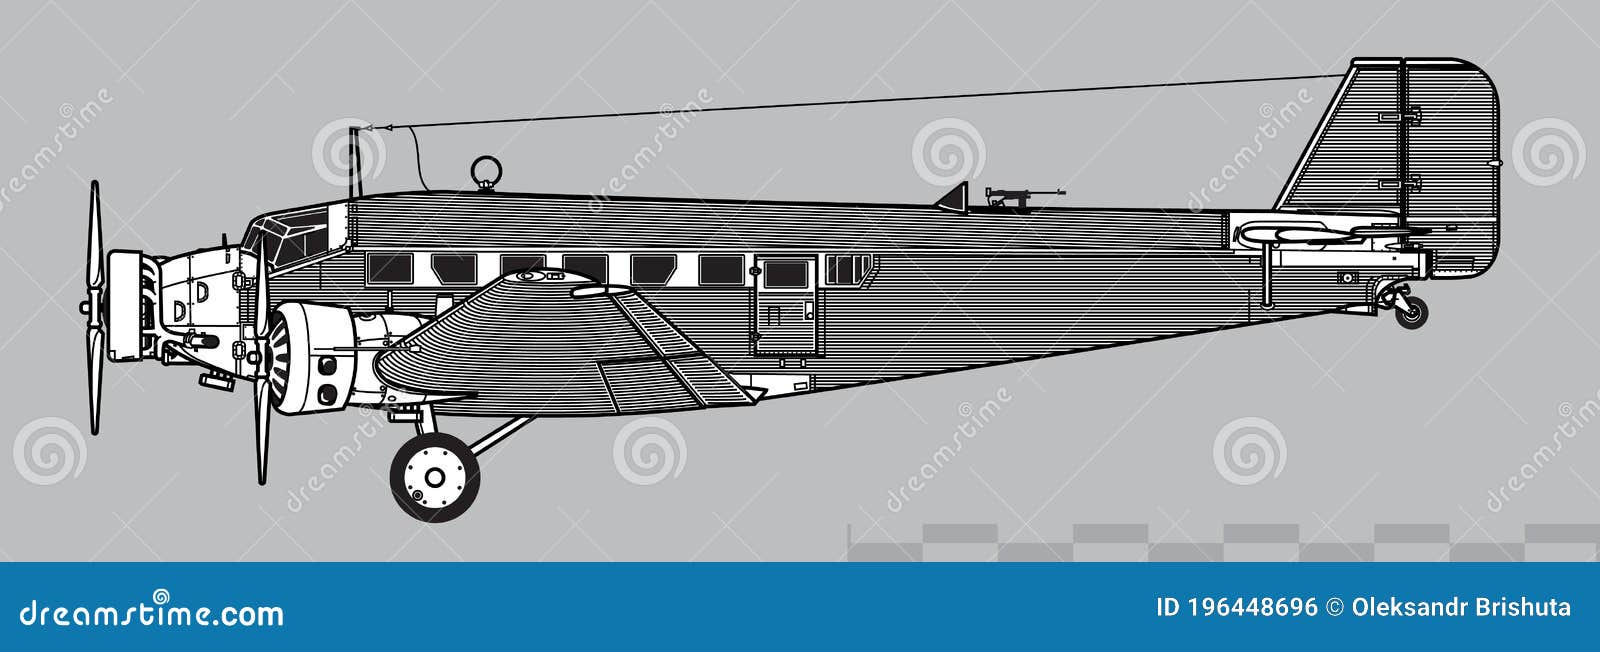 Junkers Ju 52 Dibujo De Vectores De Aviones De Transporte De La Segunda  Guerra Mundial Ilustración del Vector - Ilustración de europa, aeroplano:  196448696